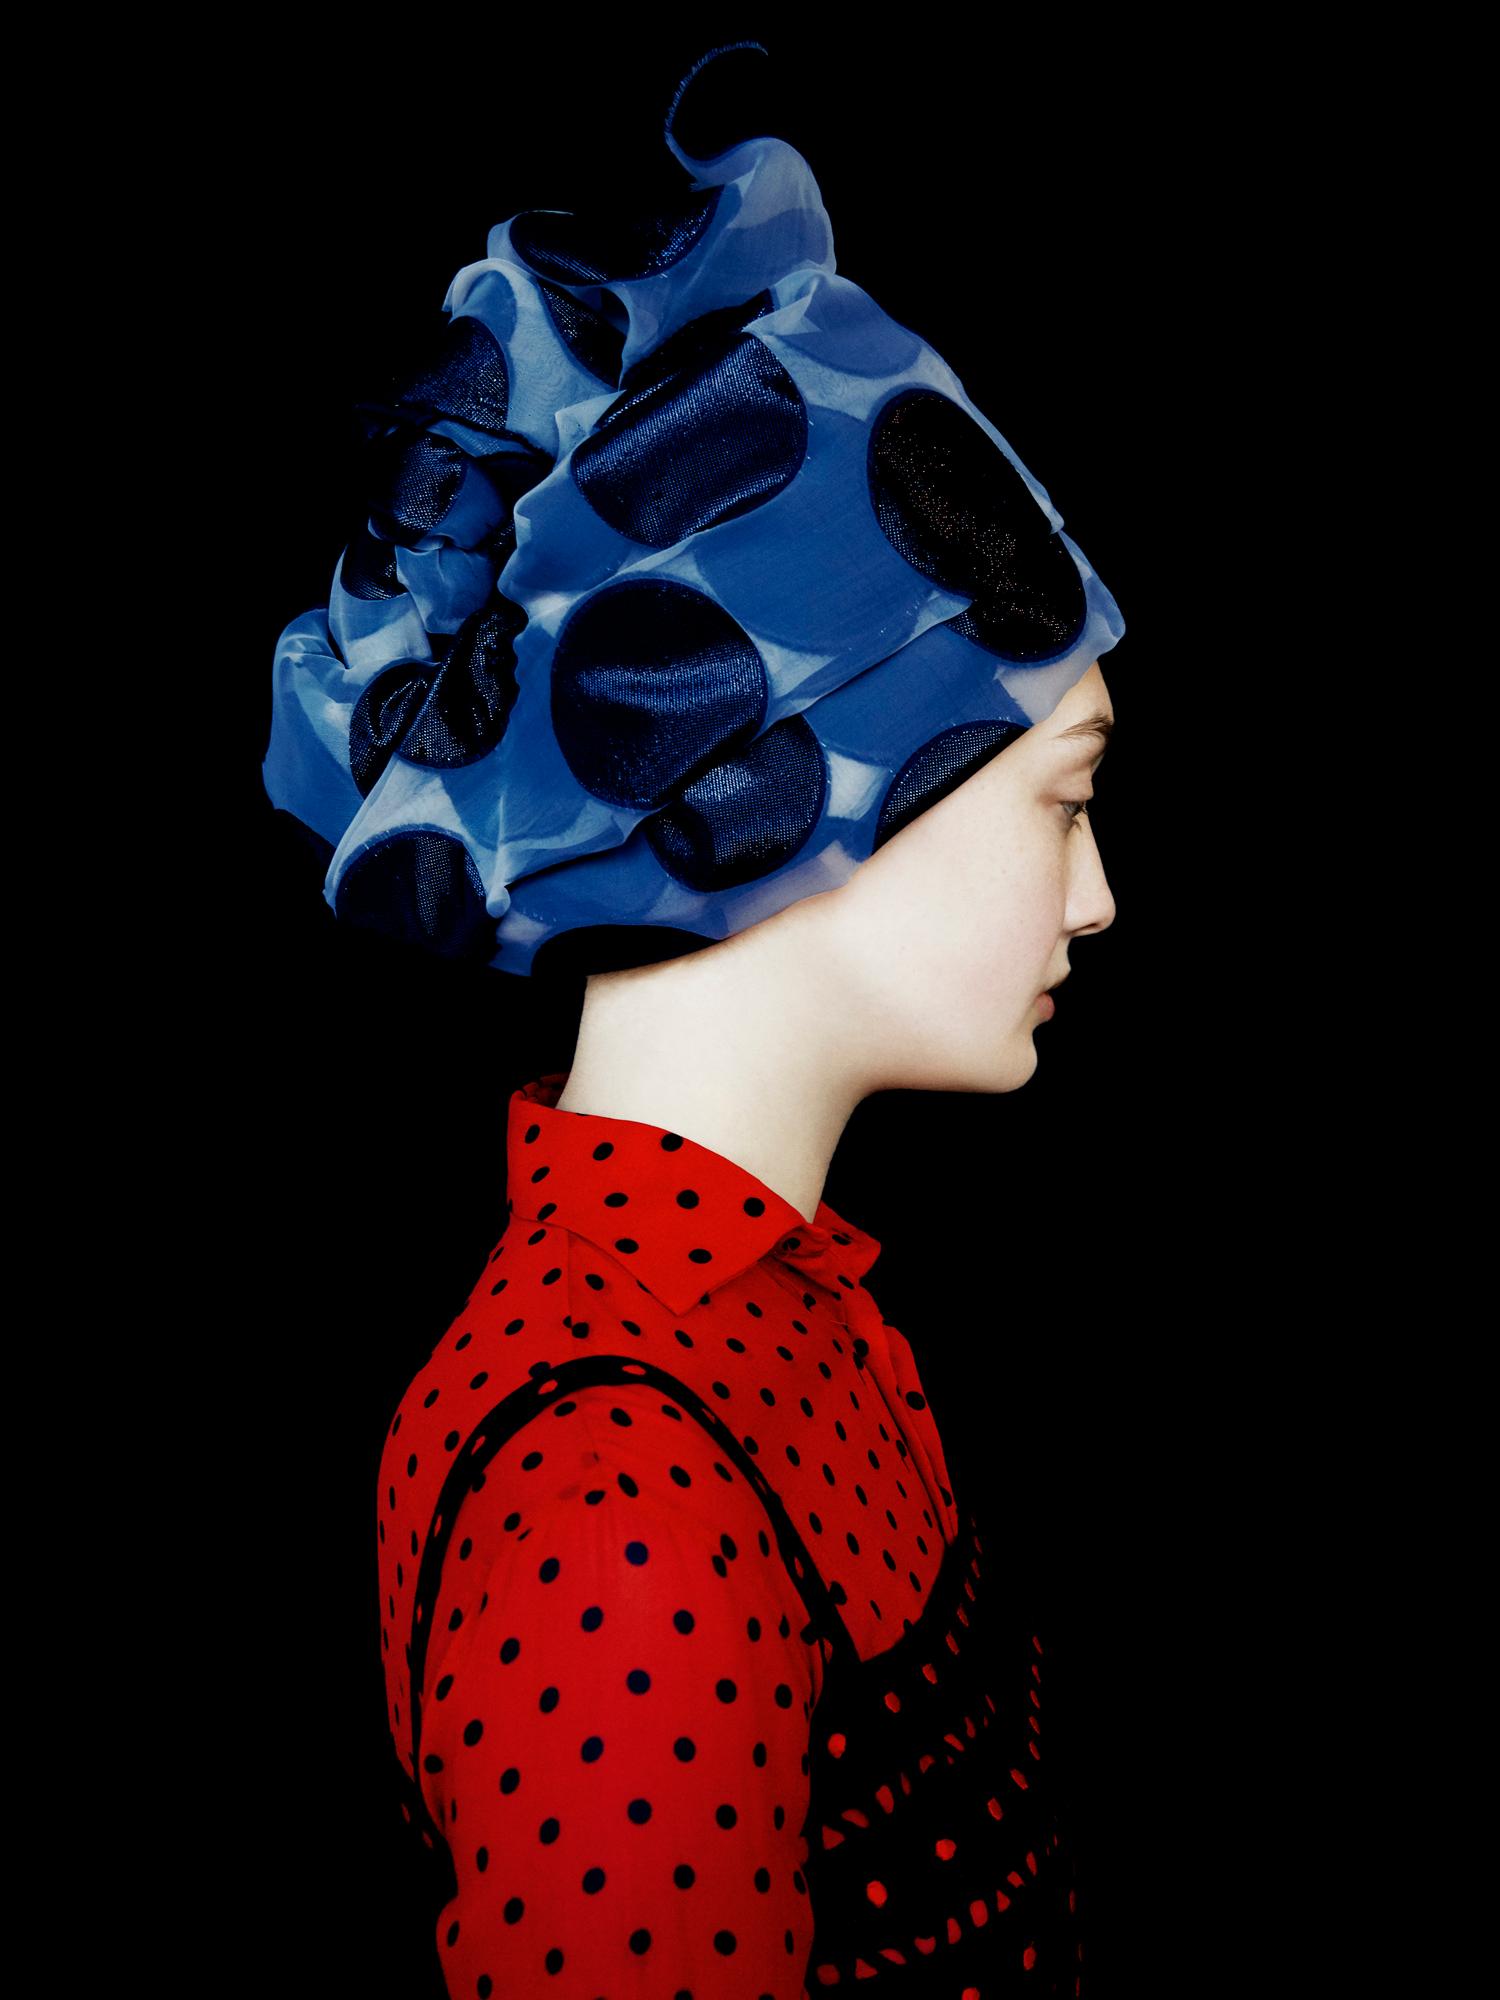 Erik Madigan Heck Color Photograph - Without A Face (Dior) 